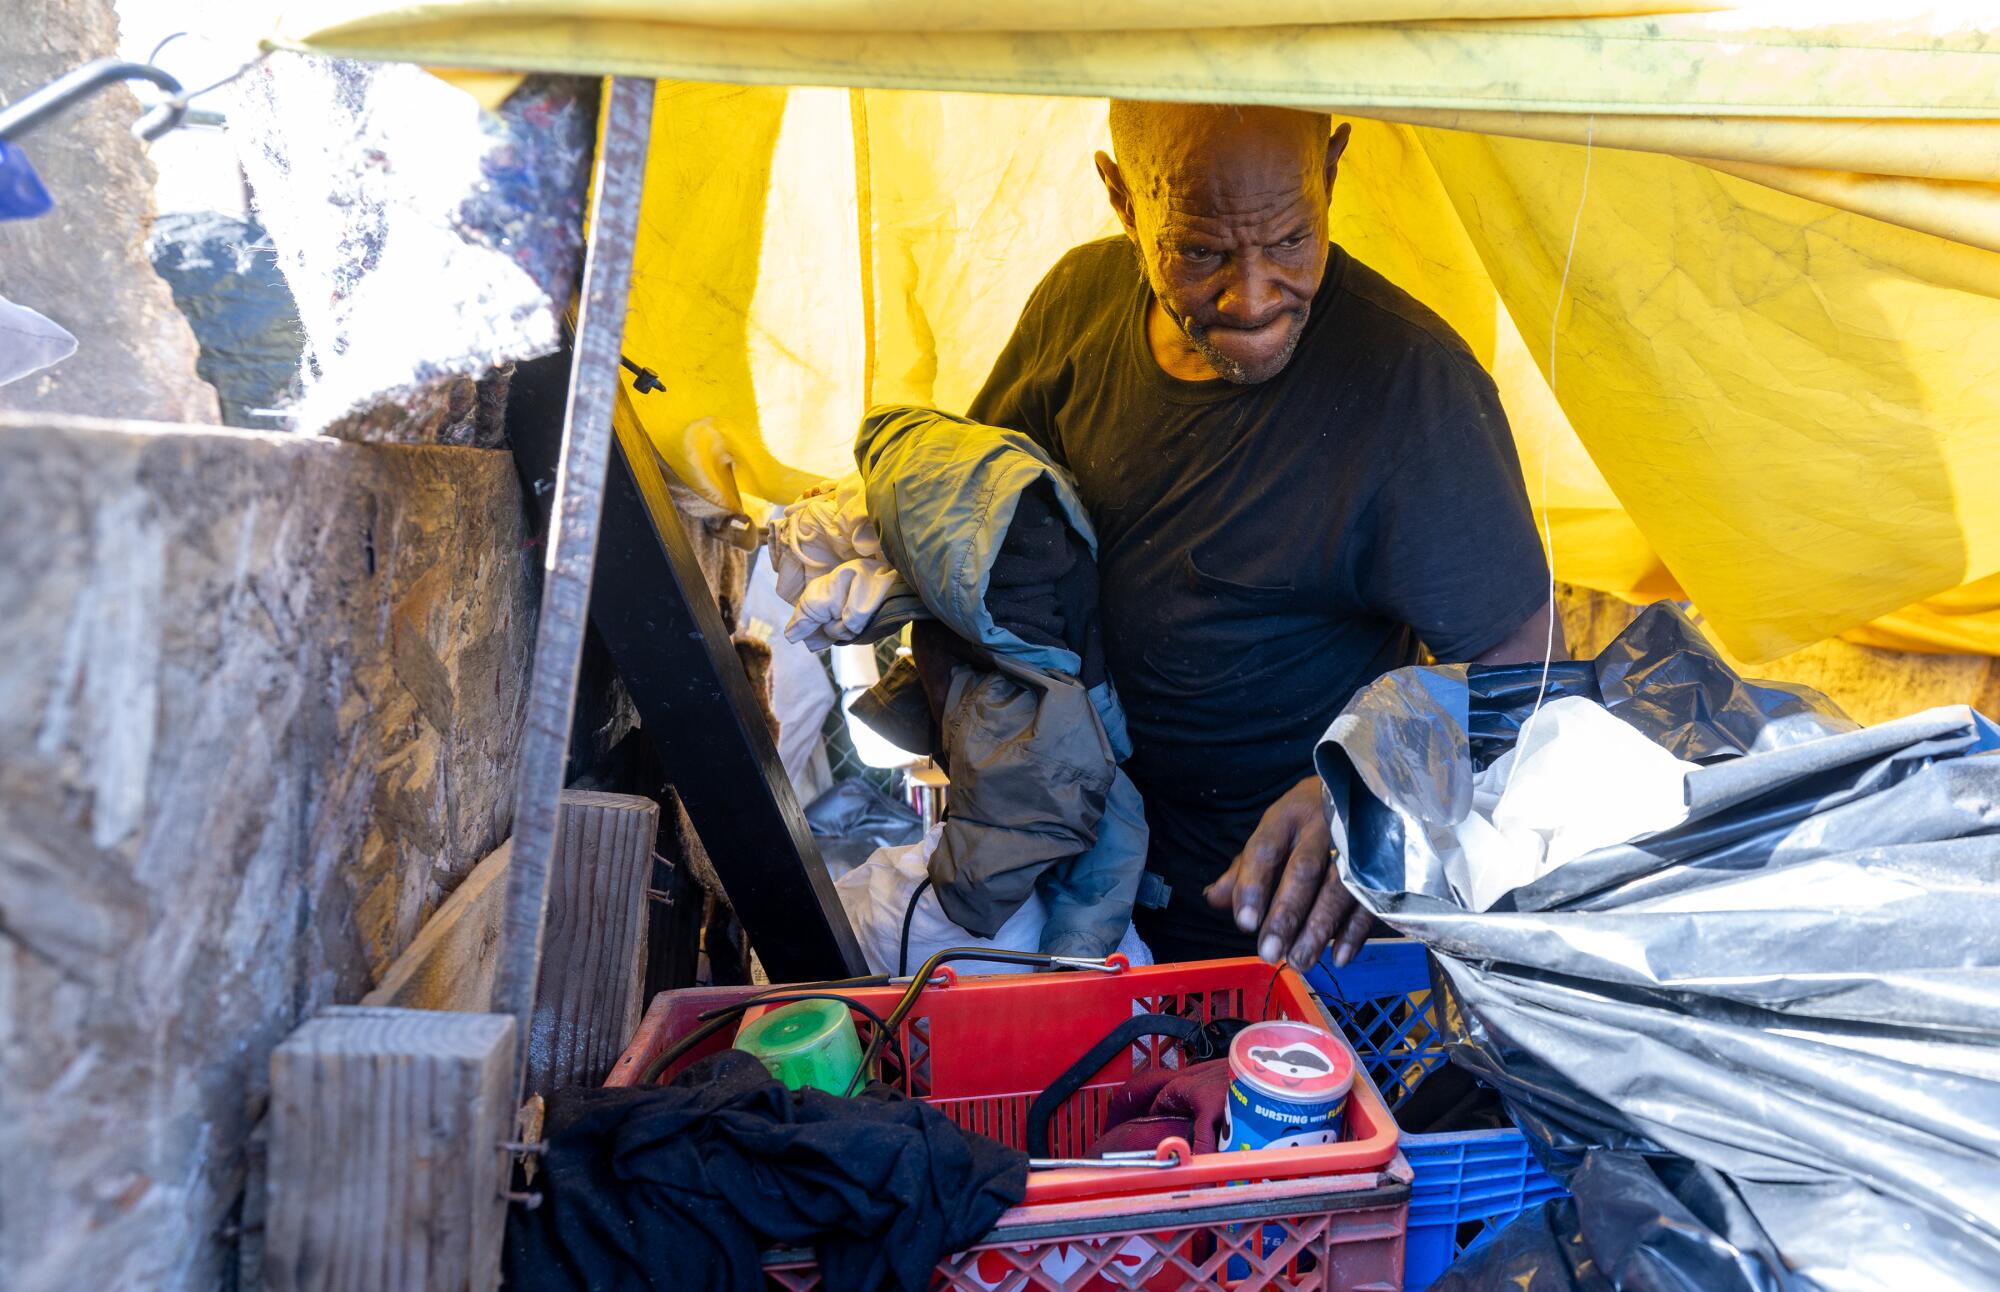 62 岁的德怀特·托马斯 (Dwight Thomas) 周三在第 86 街和百老汇的帐篷营地收拾自己的物品。